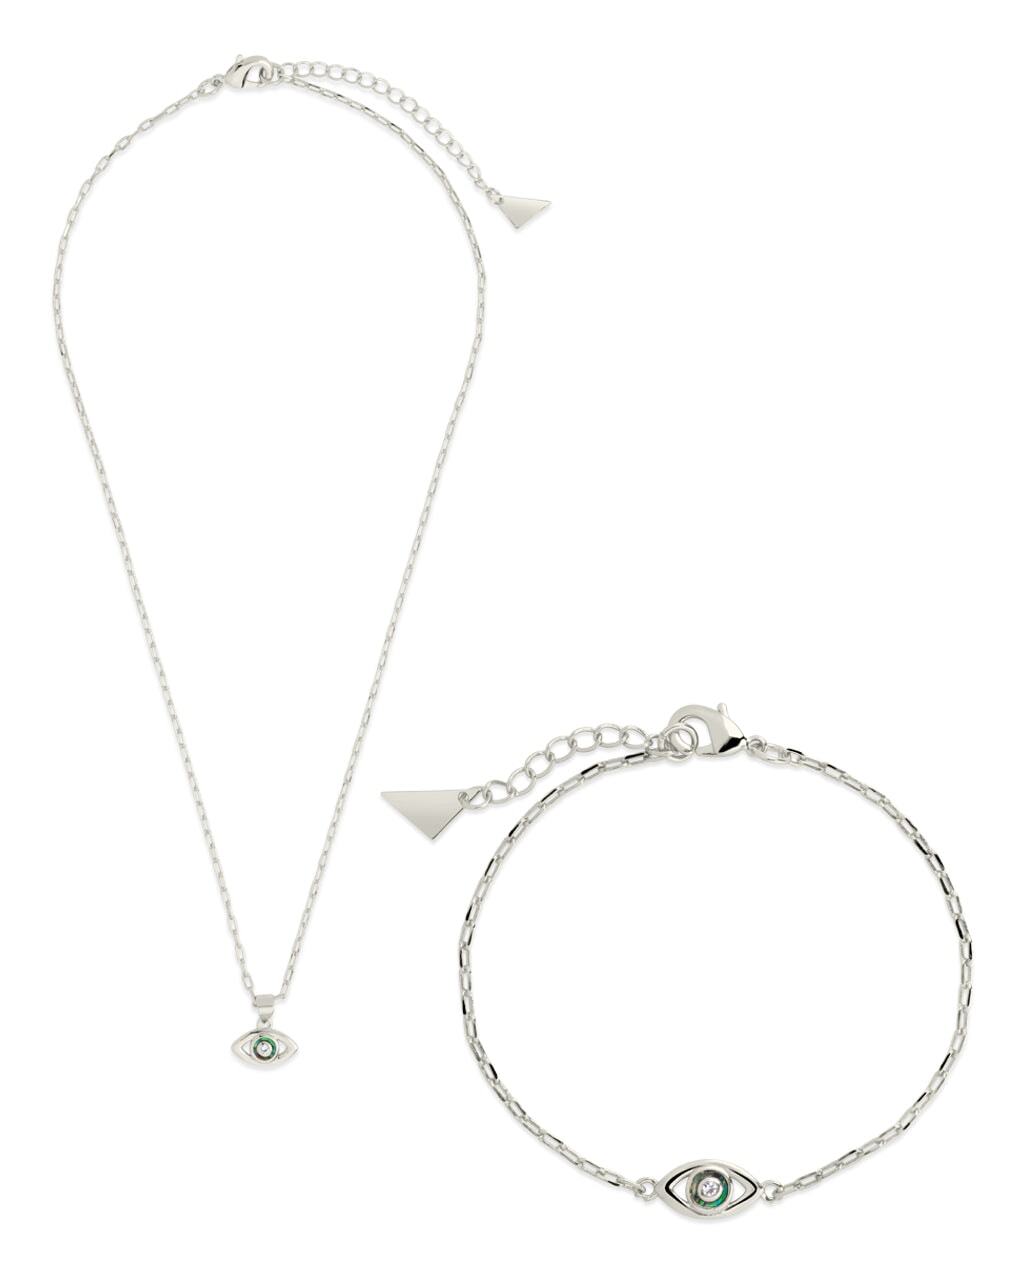 Mother of Pearl & CZ Evil Eye Bracelet and Necklace Set Bundles Sterling Forever Silver 